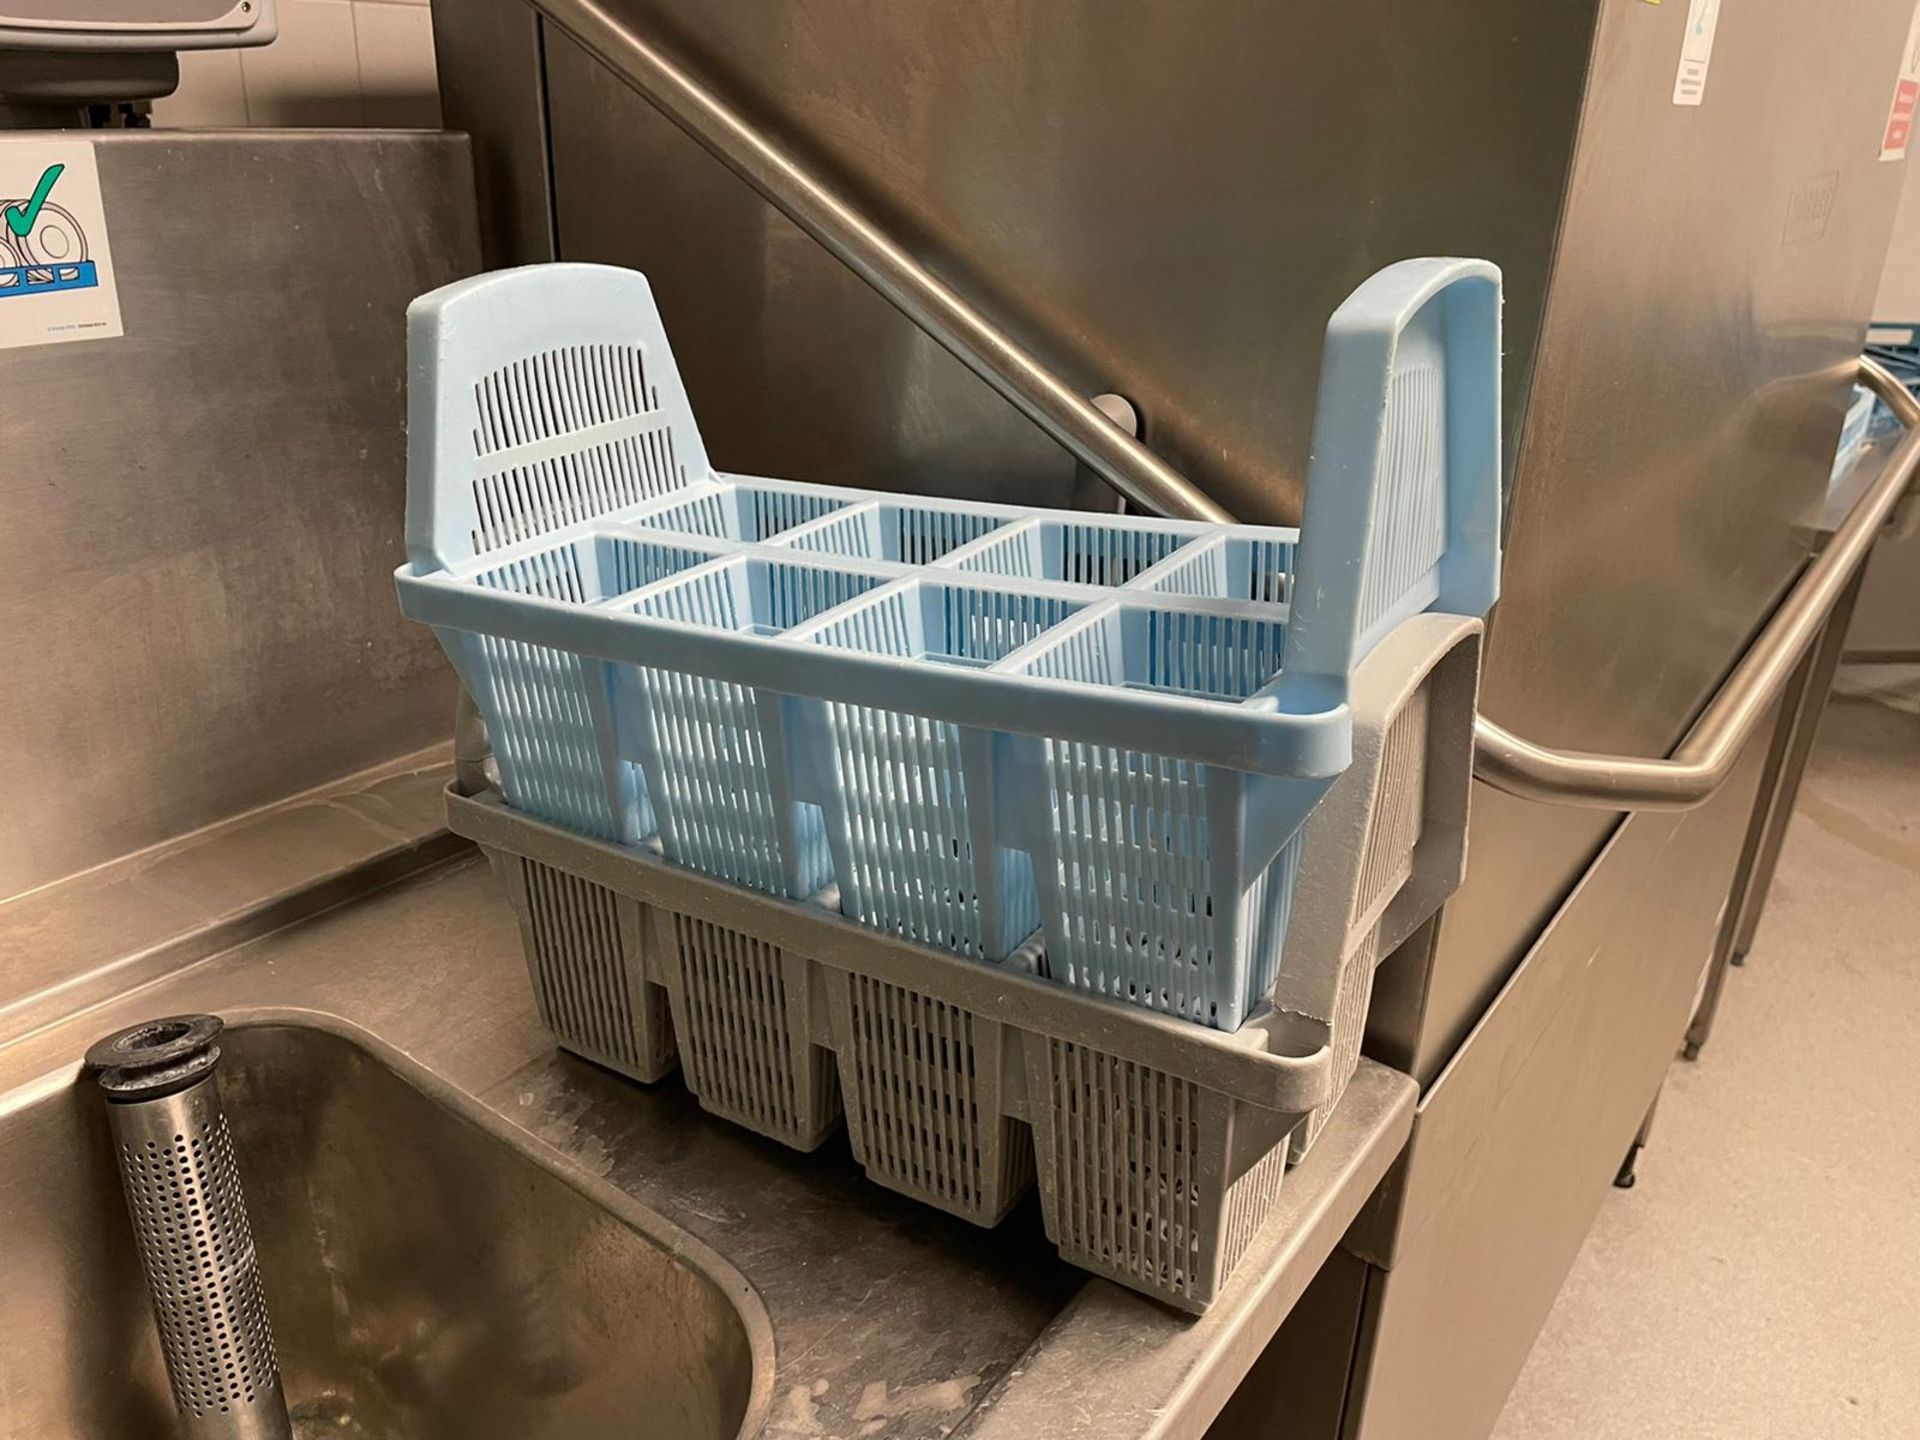 Hobart Dishwasher - Image 11 of 11